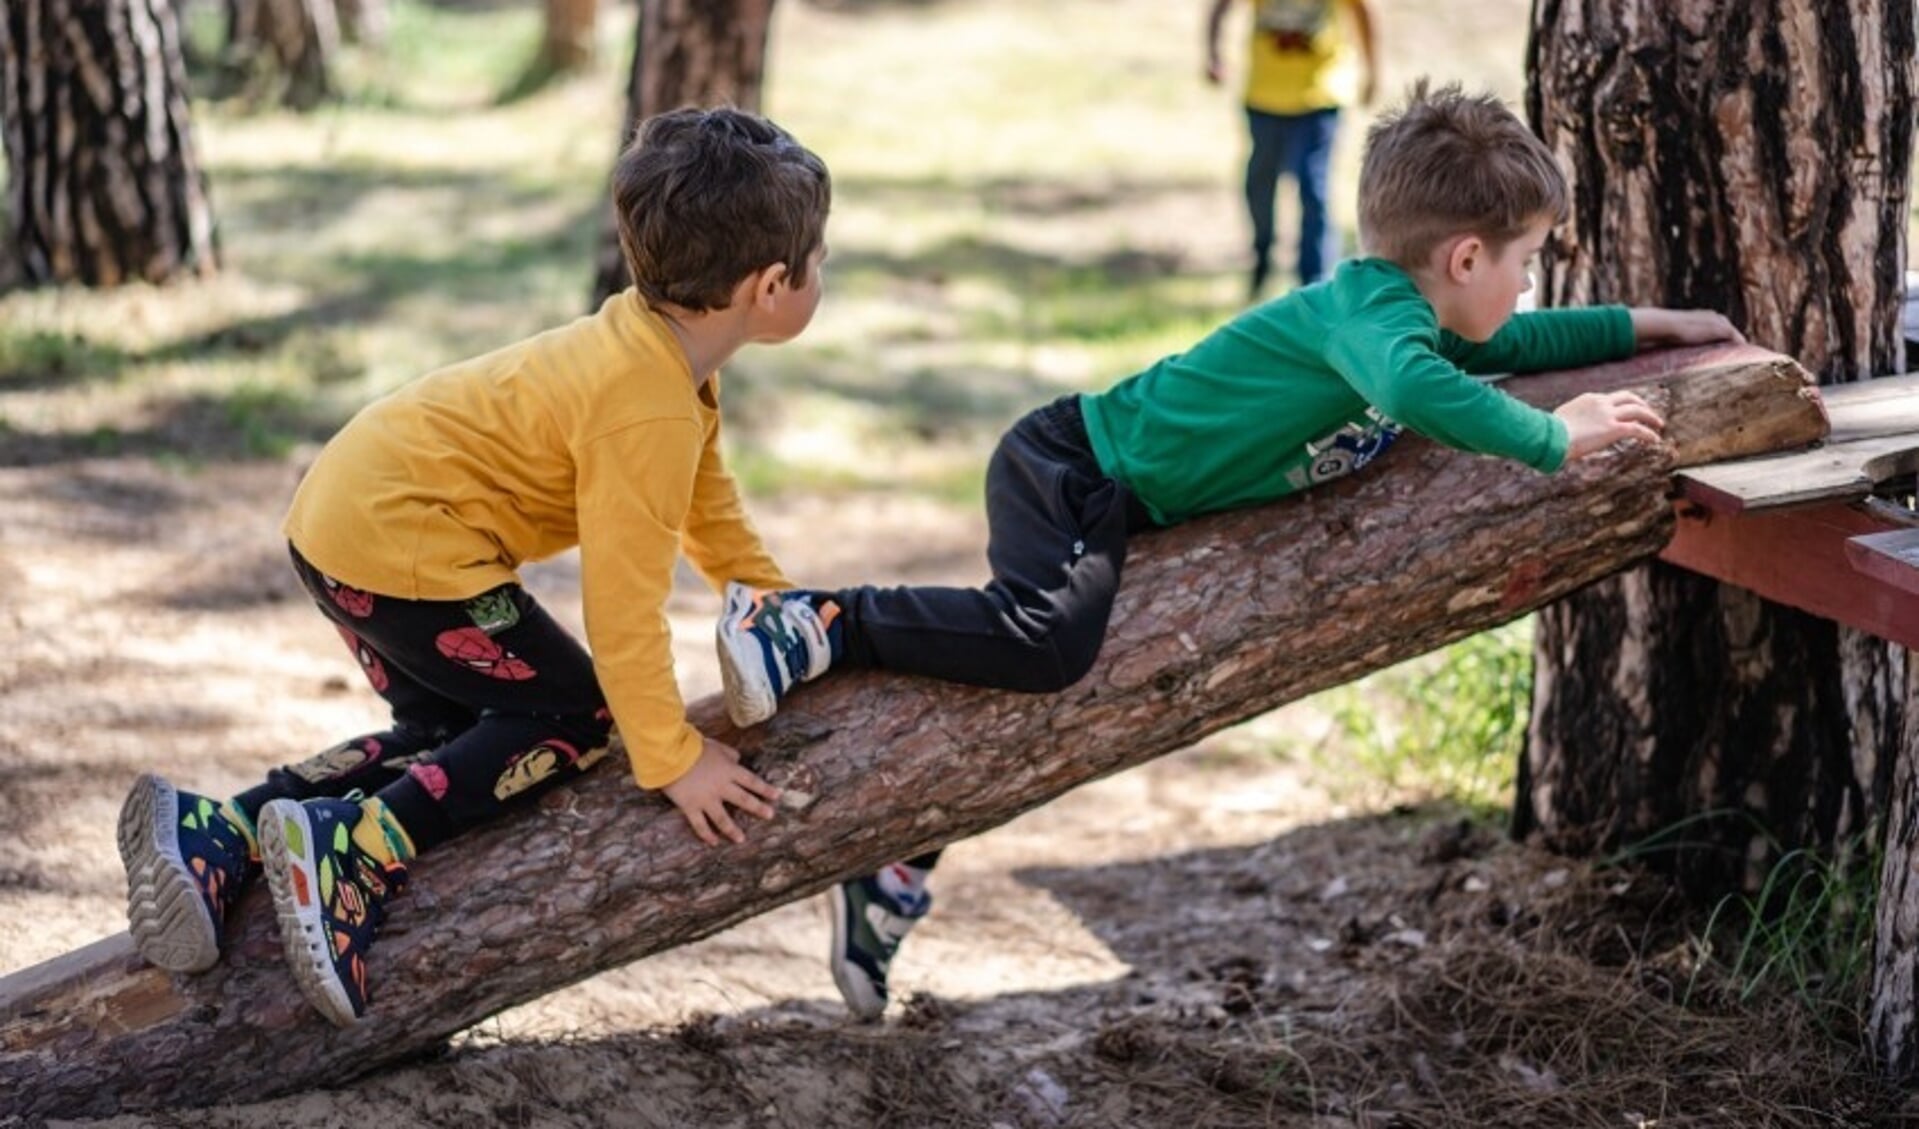 Europa Kinderhulp is ook in de Achterhoek op zoek naar vakantiegezinnen om kinderen met een kwetsbare achtergrond een paar fijne weken vakantie te bezorgen. Foto: PR Europa Kinderhulp